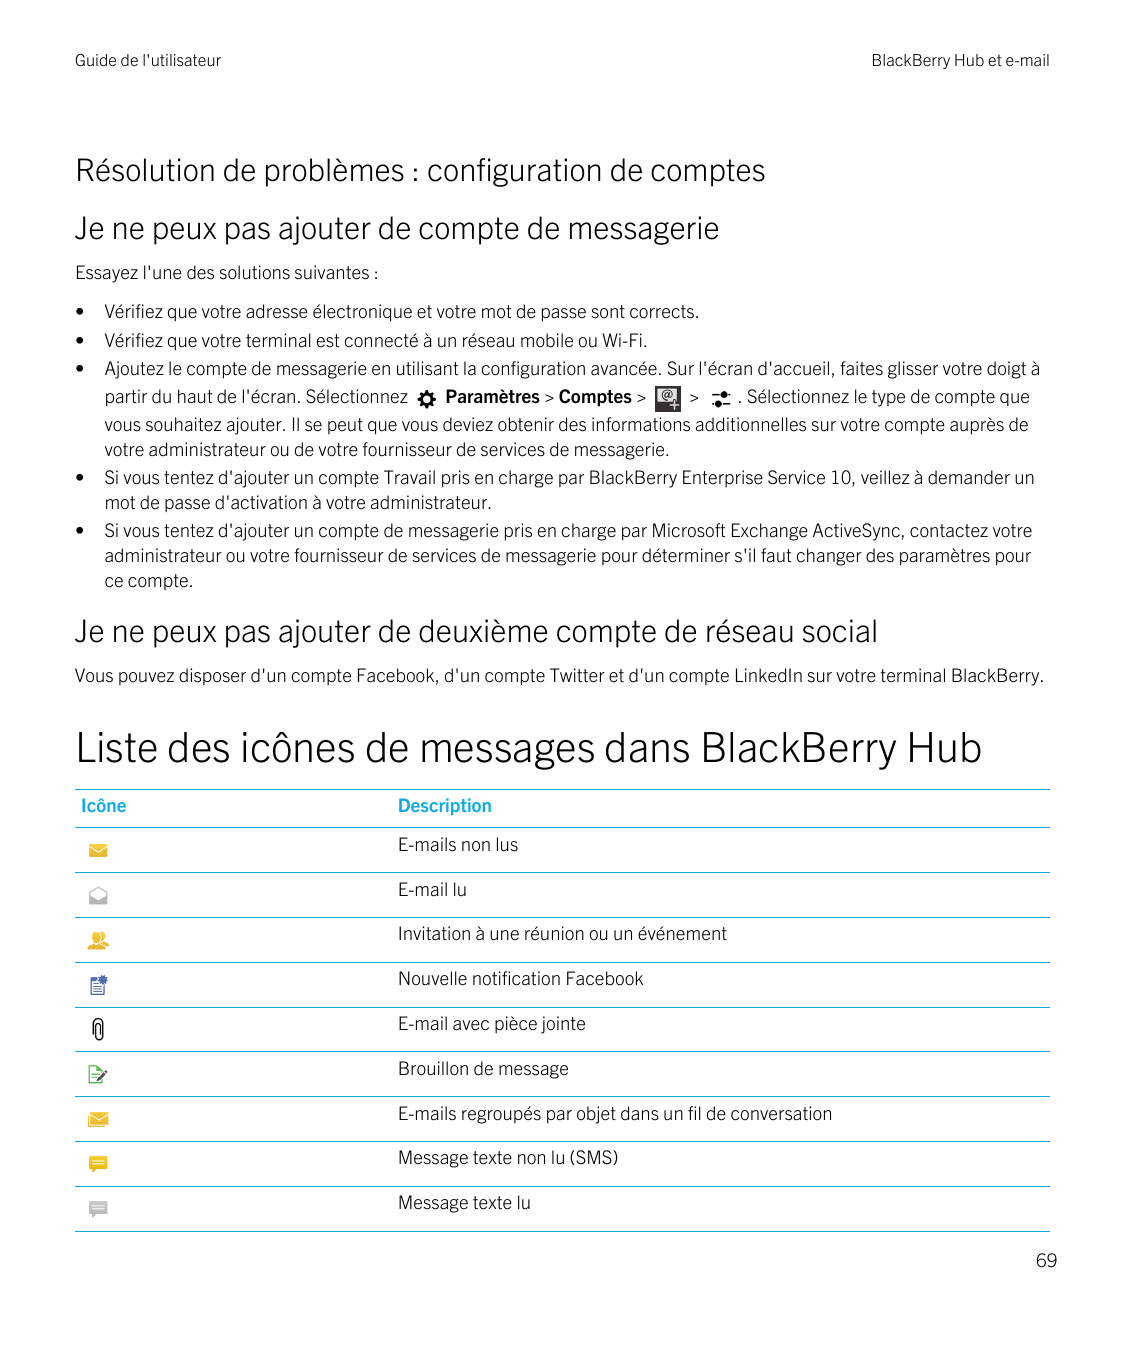 Guide de l'utilisateurBlackBerry Hub et e-mailRésolution de problèmes : configuration de comptesJe ne peux pas ajouter de compte